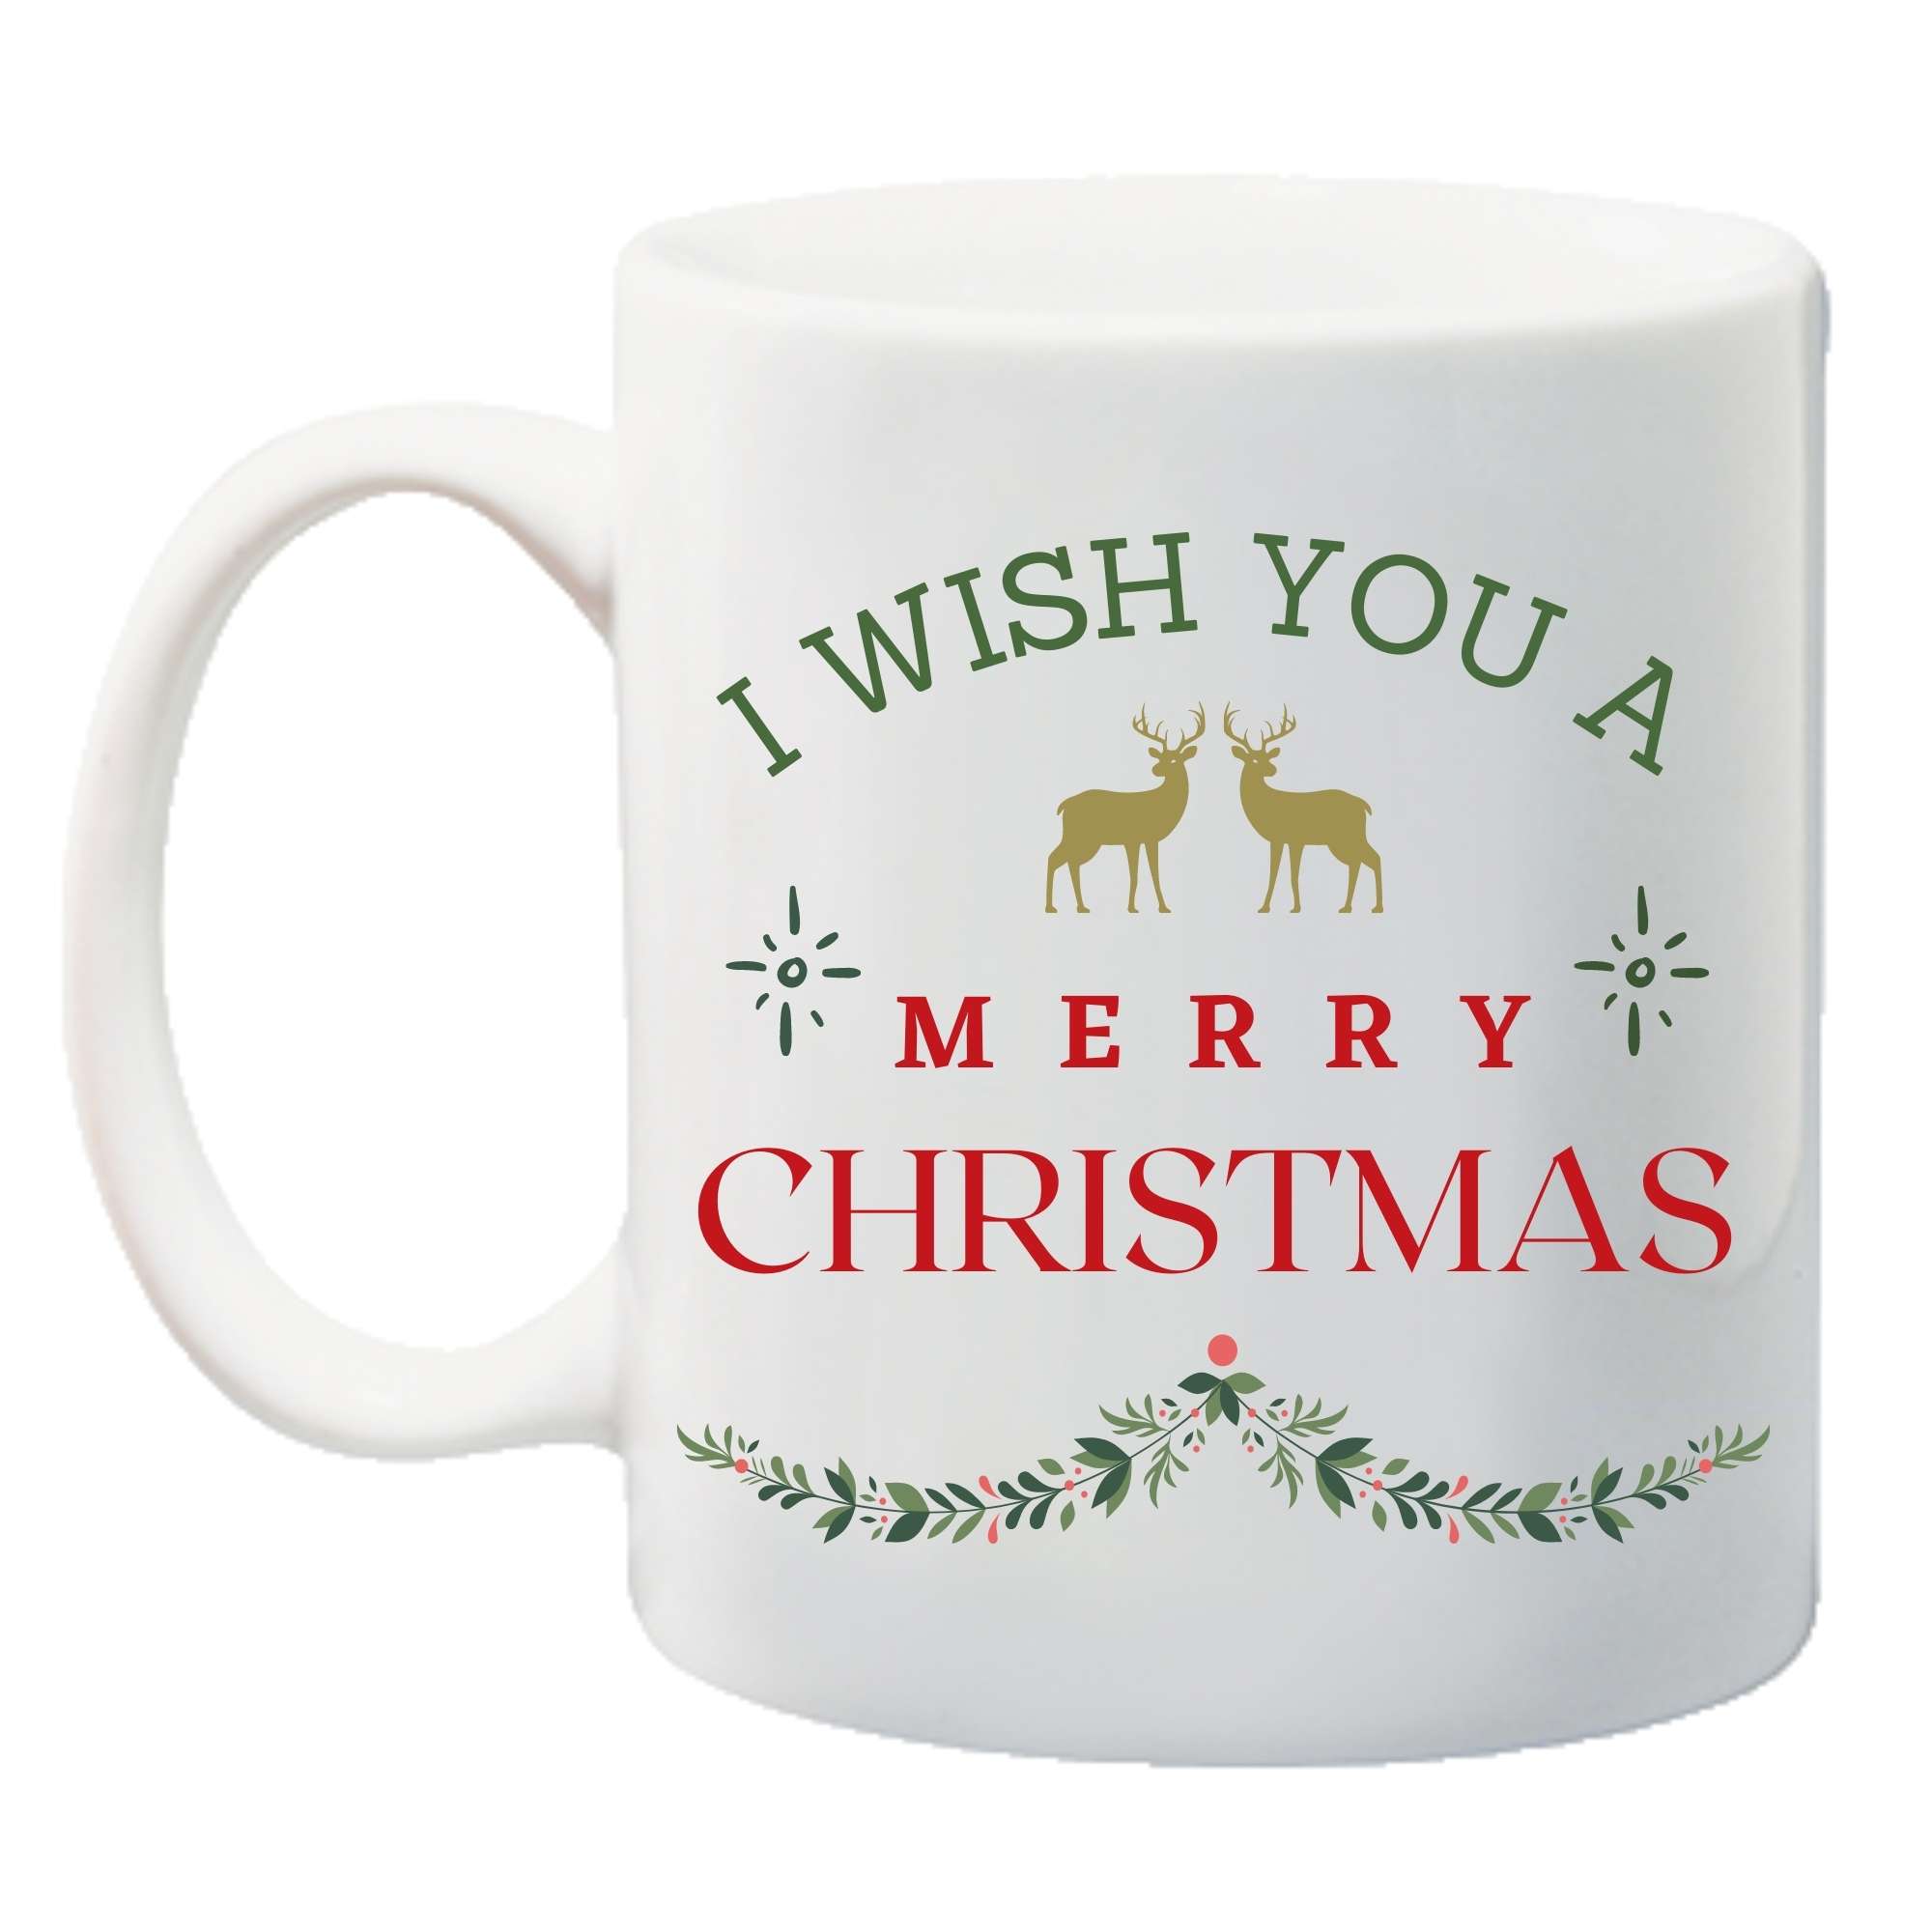 I-Wish-You-A-Merry-Christmas-Mug_front